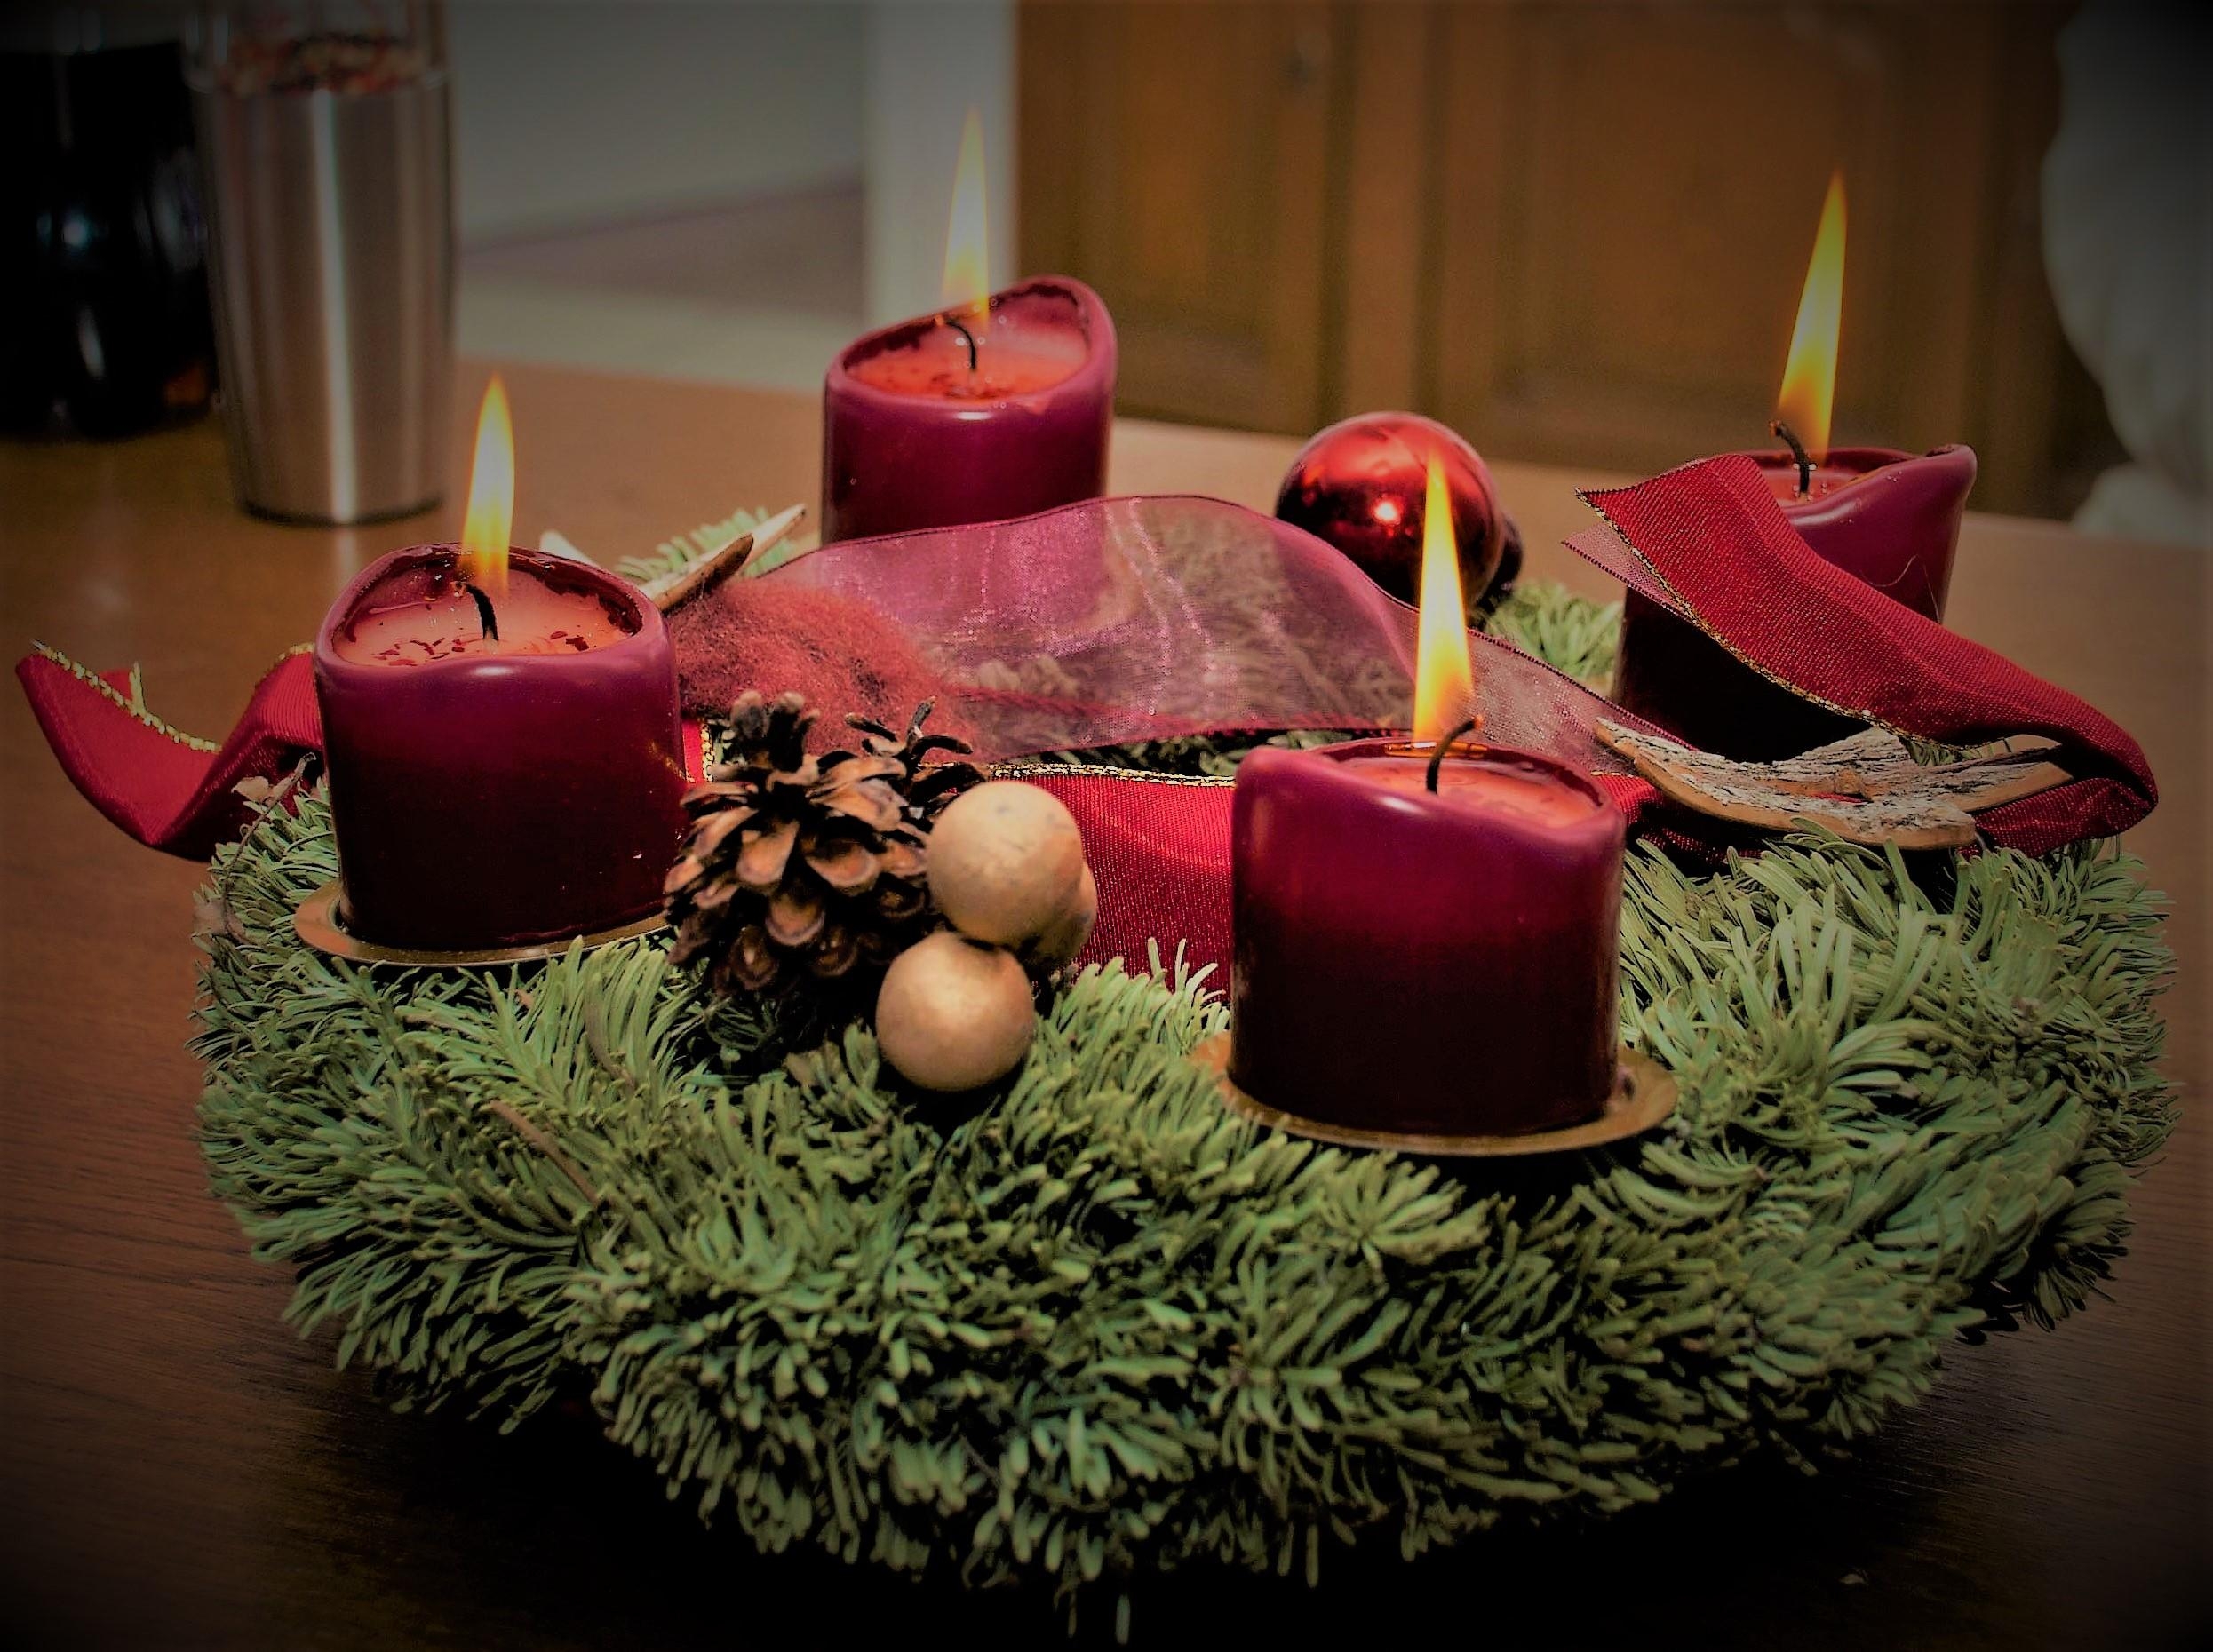 #adventskranz #kerzen
Wir machen am 1. Advent immer alle 4 Kerzen an, damit sie gleichmäßig runterbrennen können :)